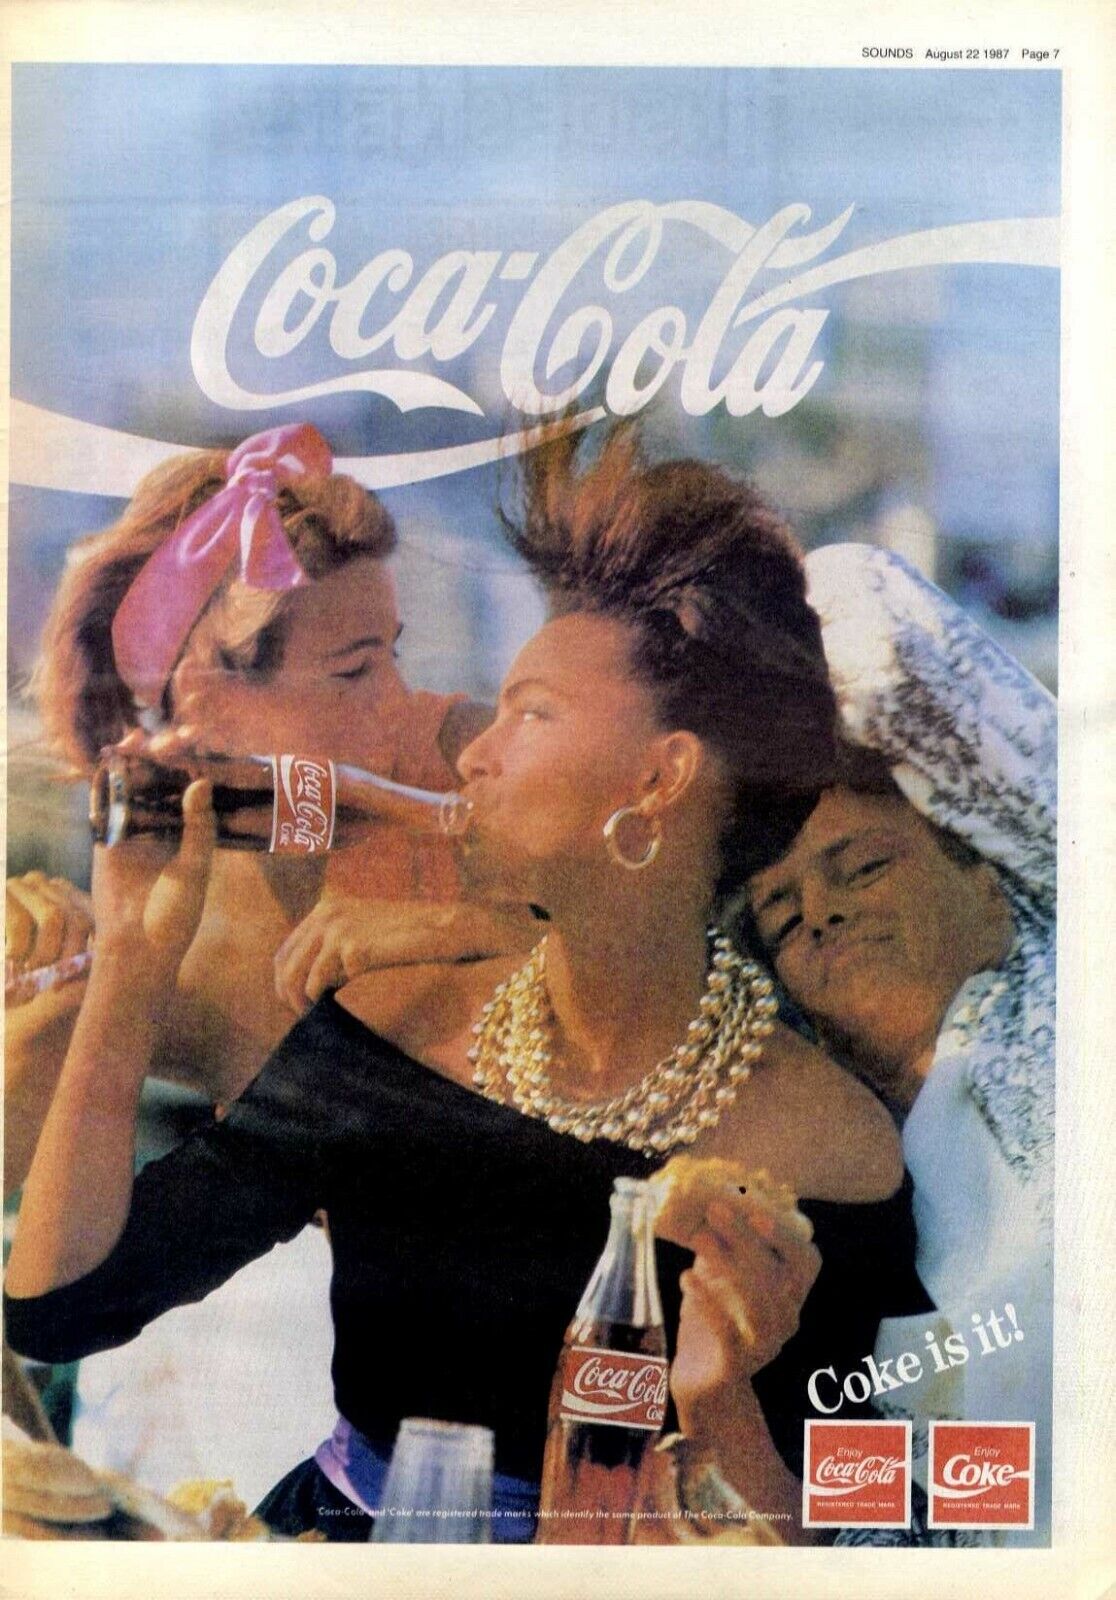 22/8/87PT7 Coca Cola Advert 15X11..